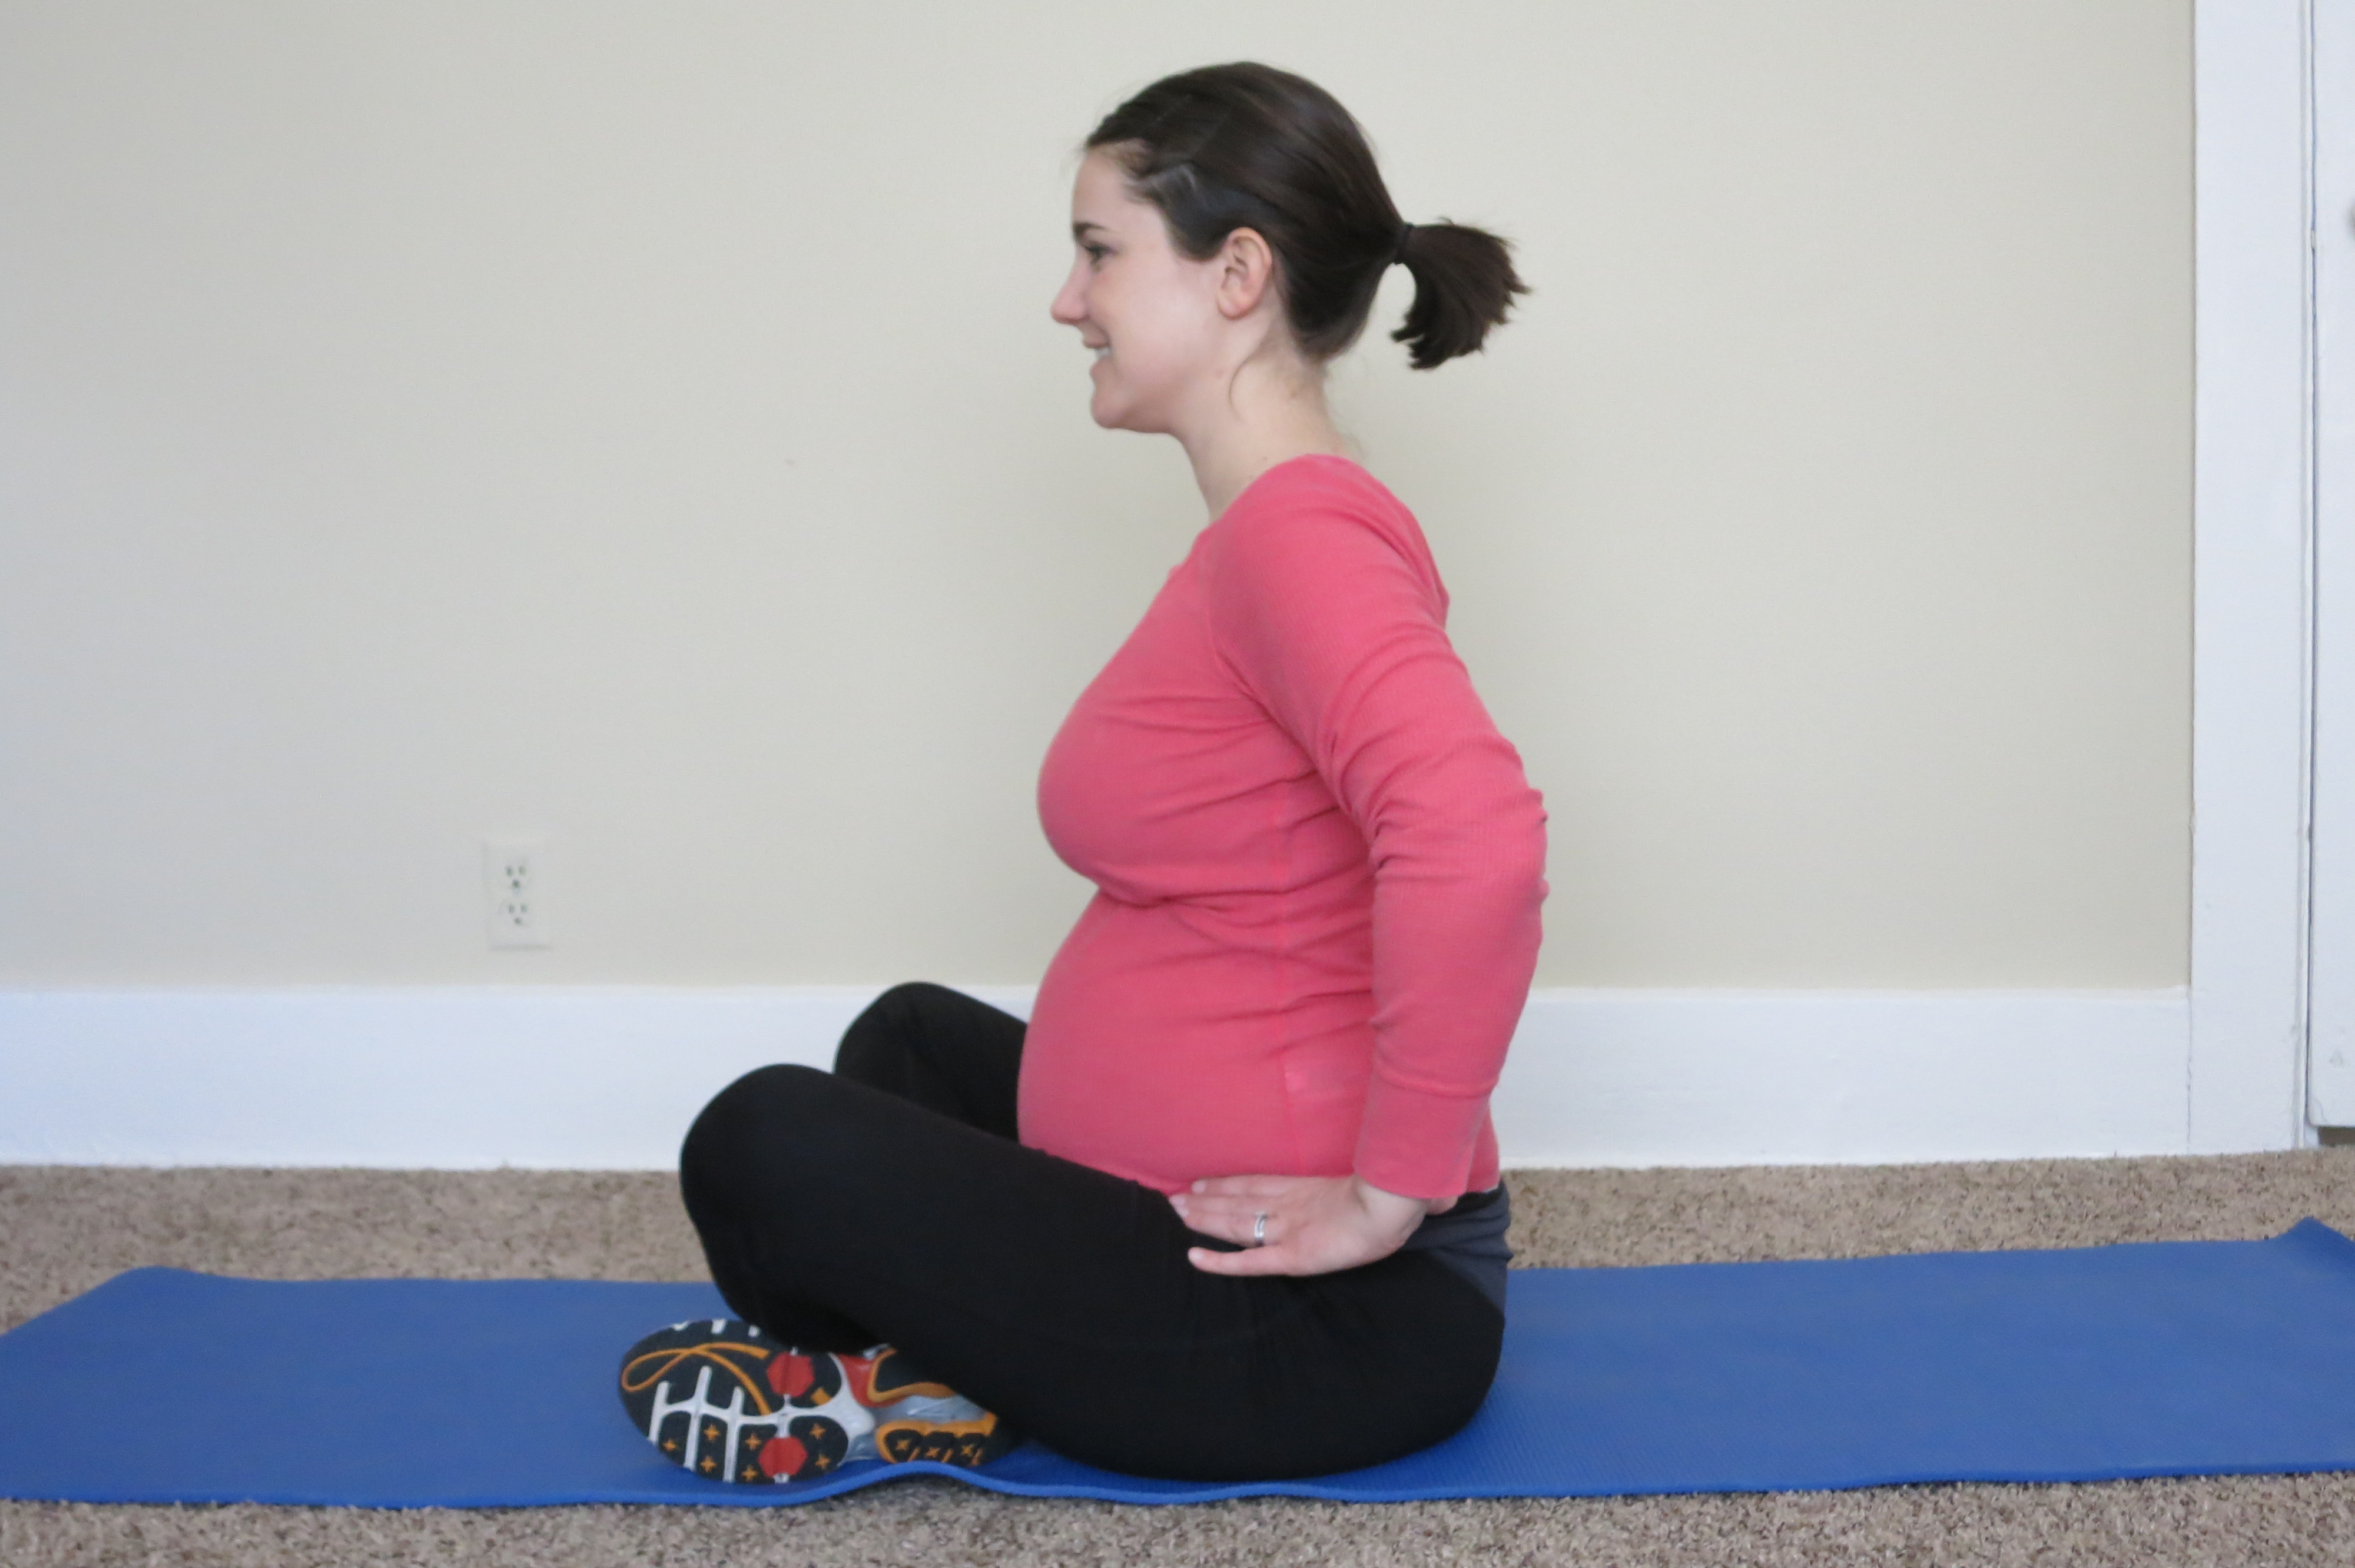 pelvic tilt, pregnancy exercise